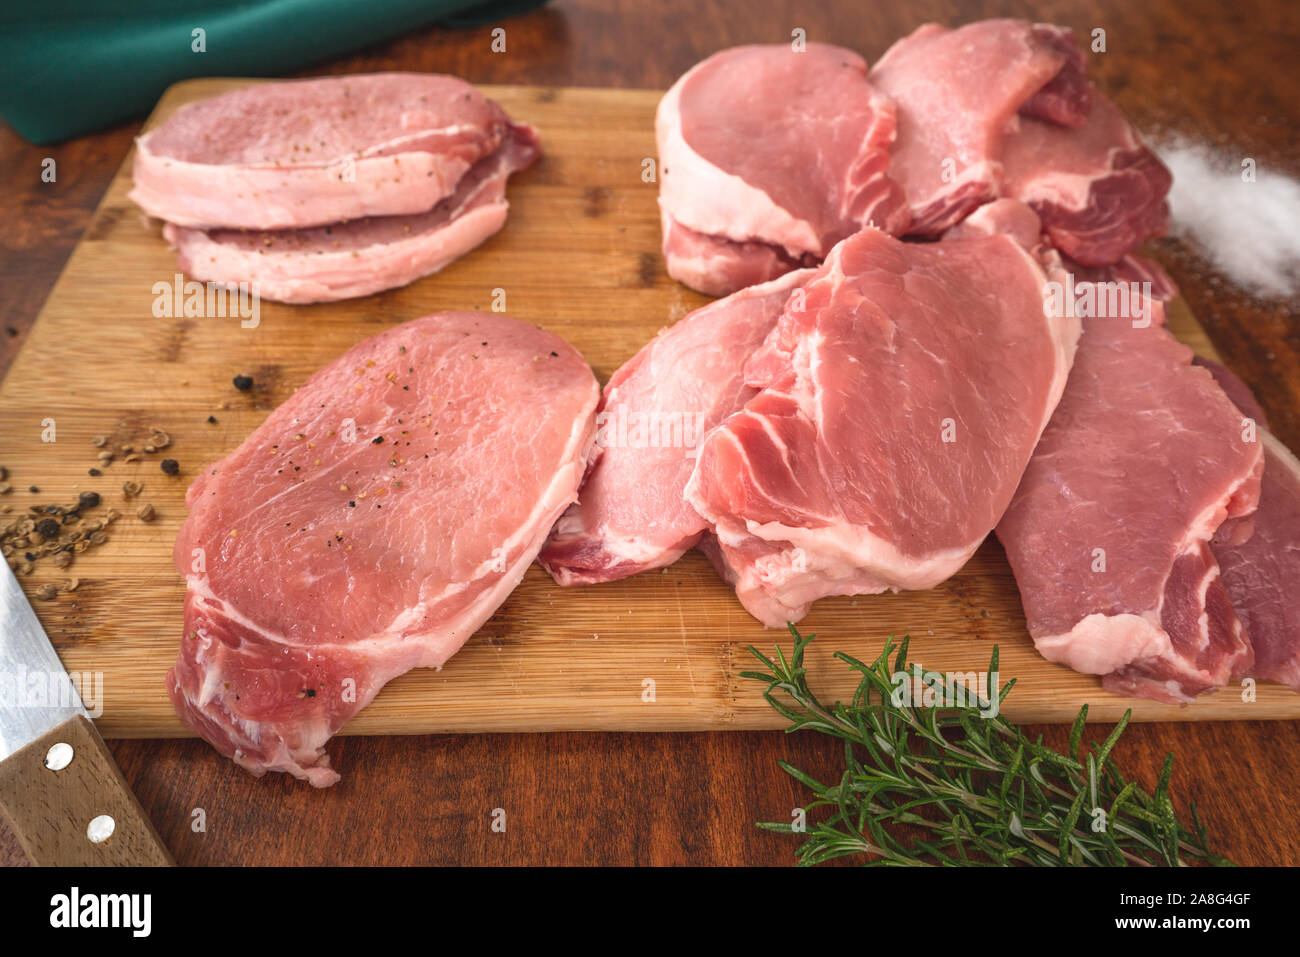 Rohes Schweinefleisch ohne Knochen Kotelett Koteletts auf Holz Schneidebrett mit einige Kräuter, Salz und Rosmarin in der Nähe auf einem Holz- rustikalen Hintergrund Stockfoto